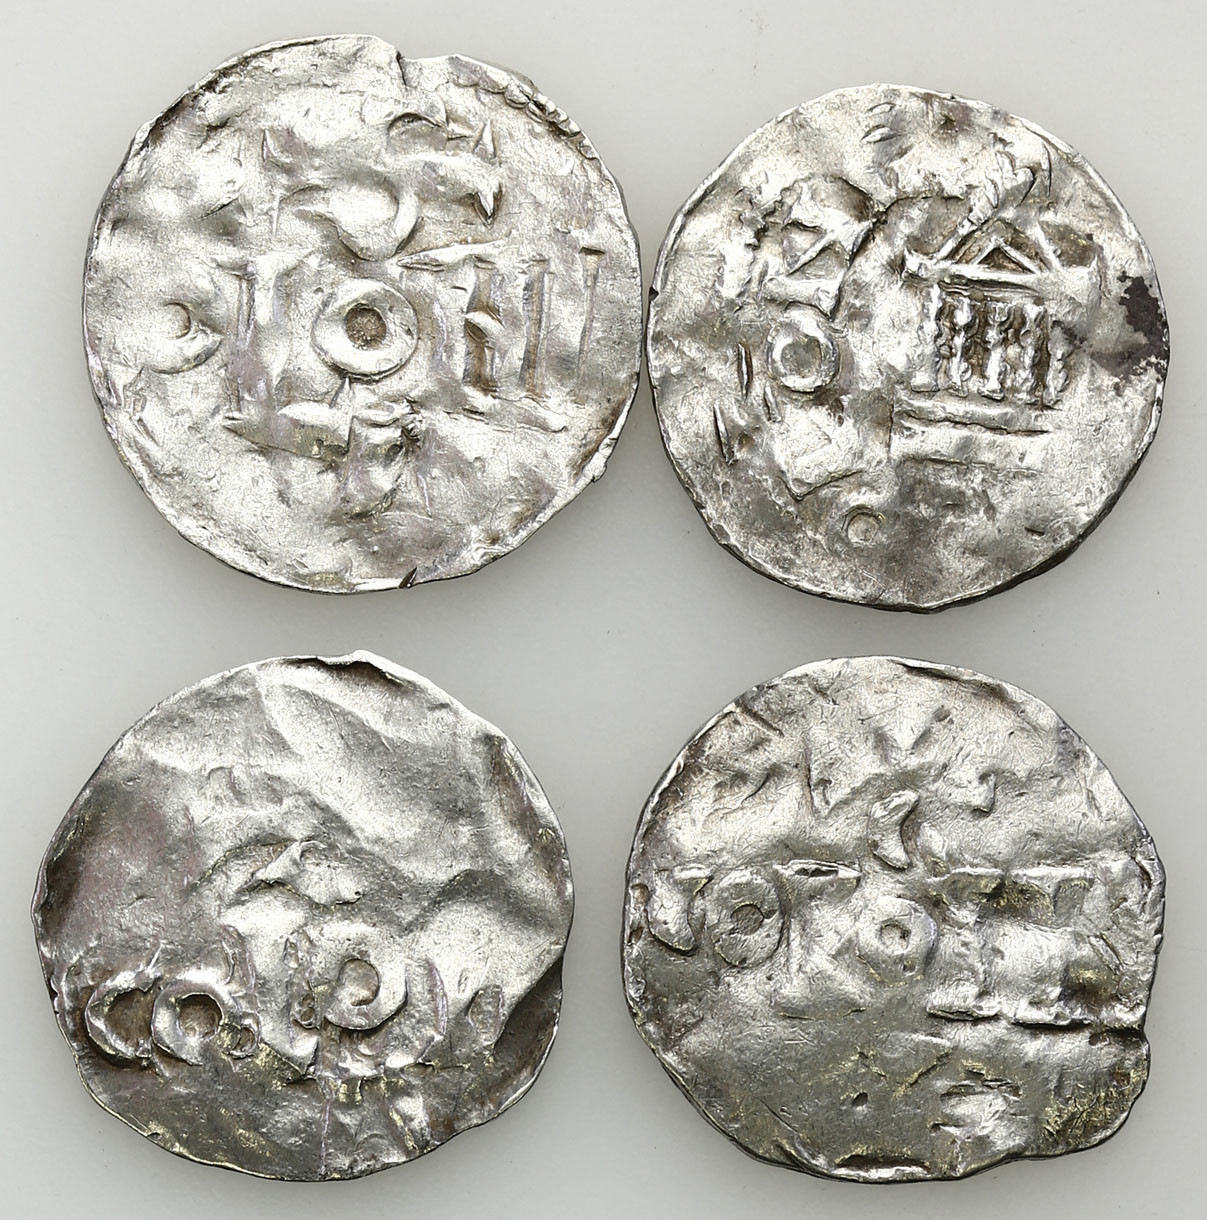 Niemcy, Dolna Lotaryngia - Kolonia, X/XI wiek. Denar typu kolońskiego i ich naśladownictwa, zestaw 3 monet